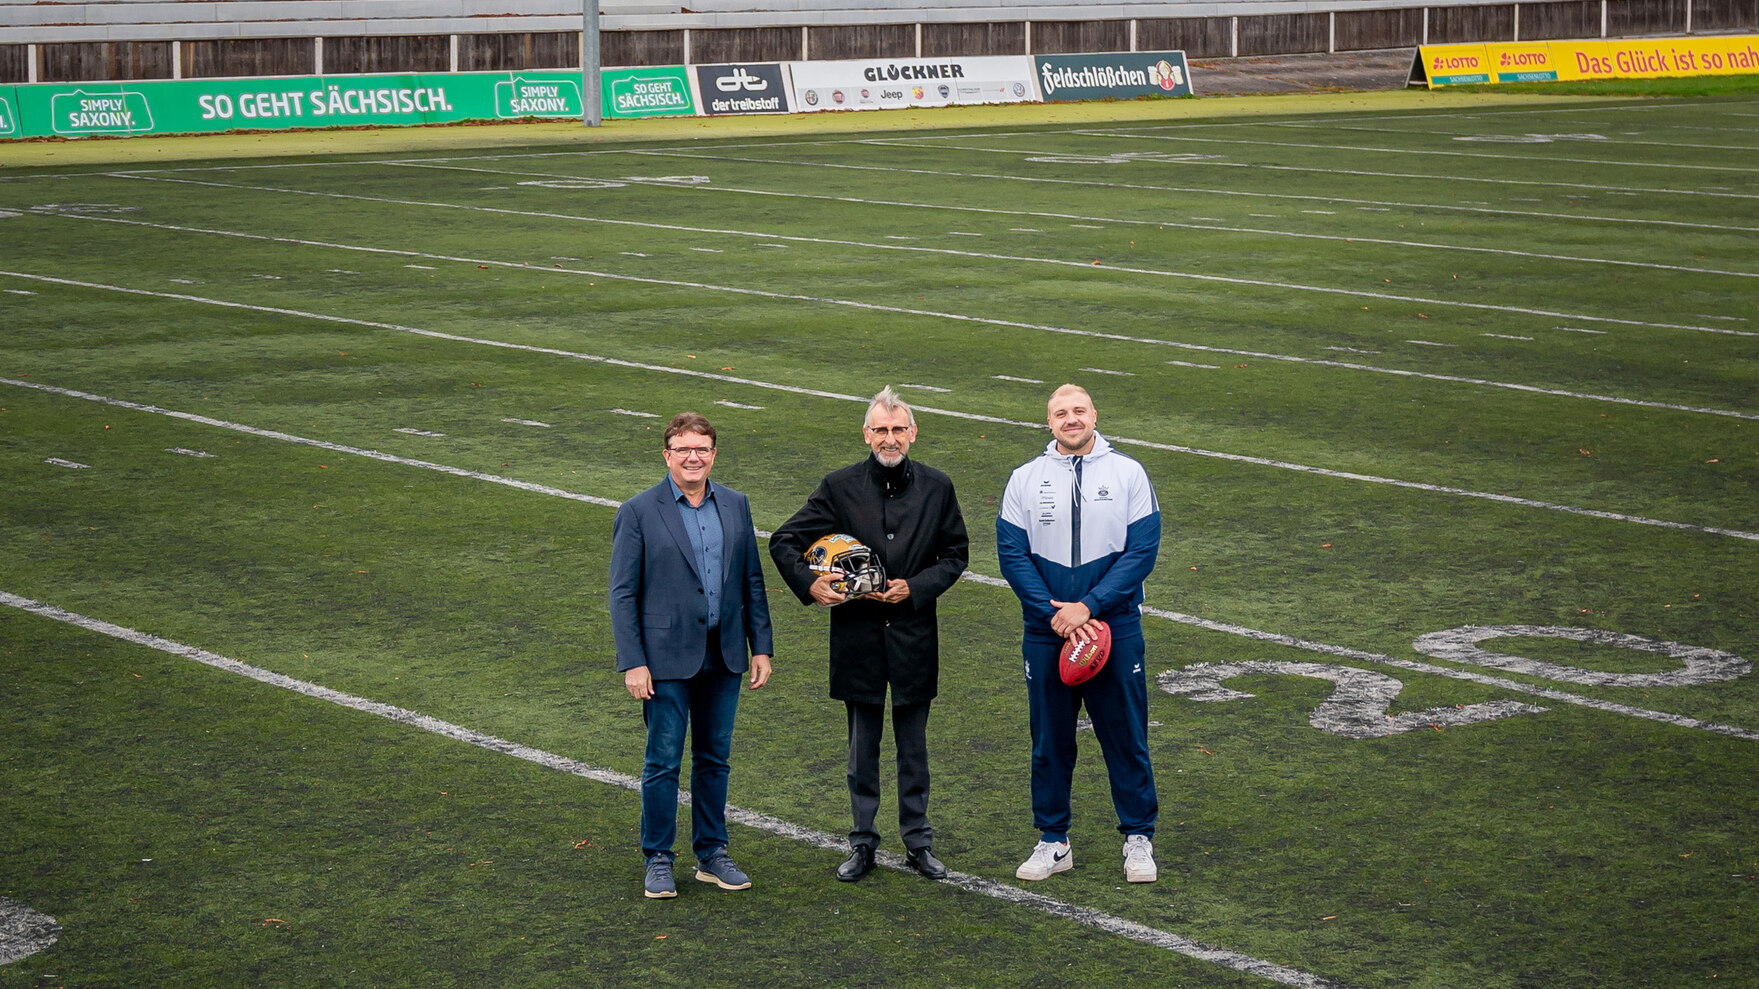 Drei Männer stehen auf einem Football-Feld und posieren für ein Foto.